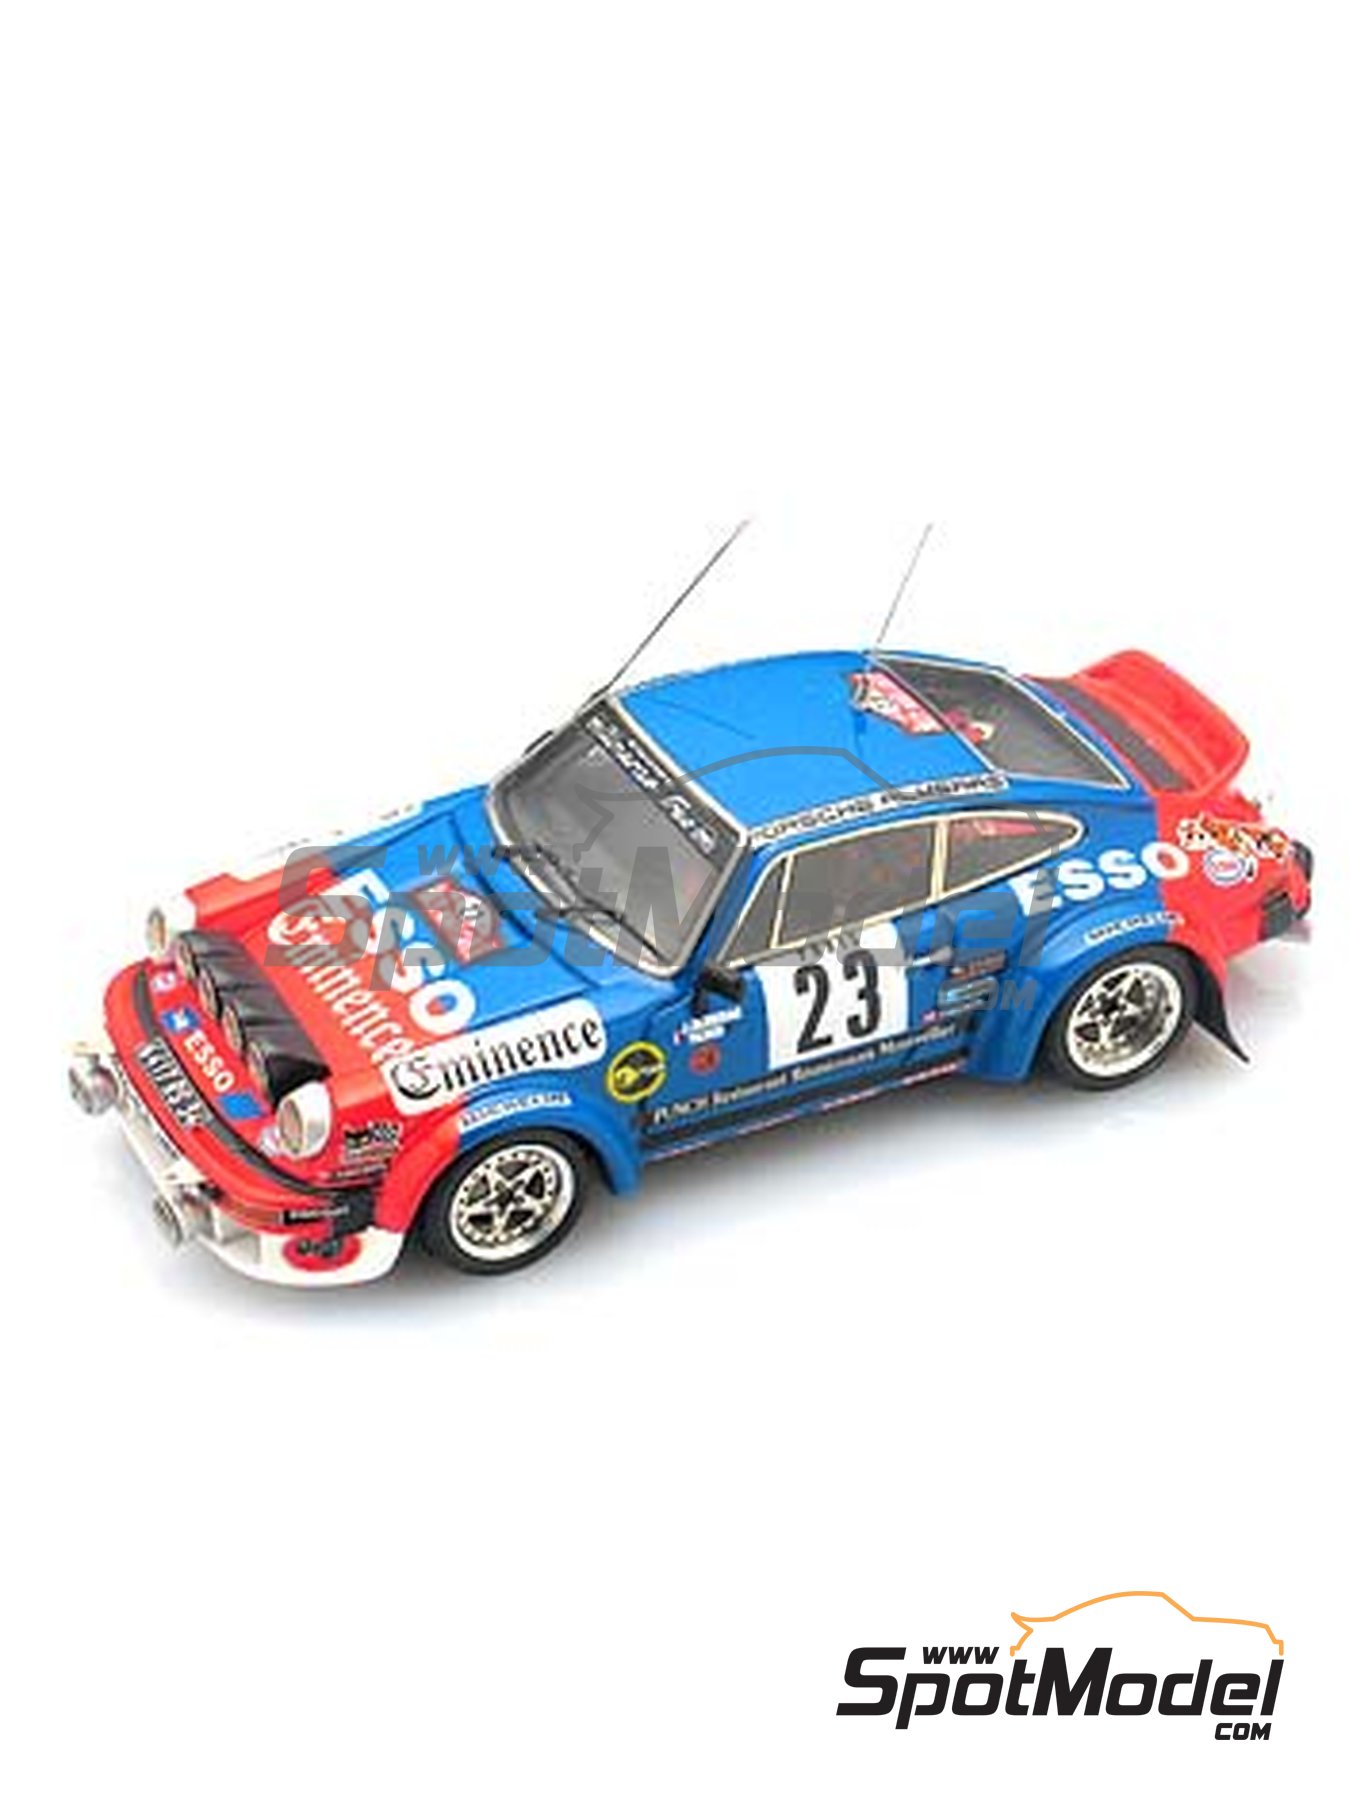 1:43 Porsche 911S Coupe 2.4 1971 DEA Diecast Car Model Toy